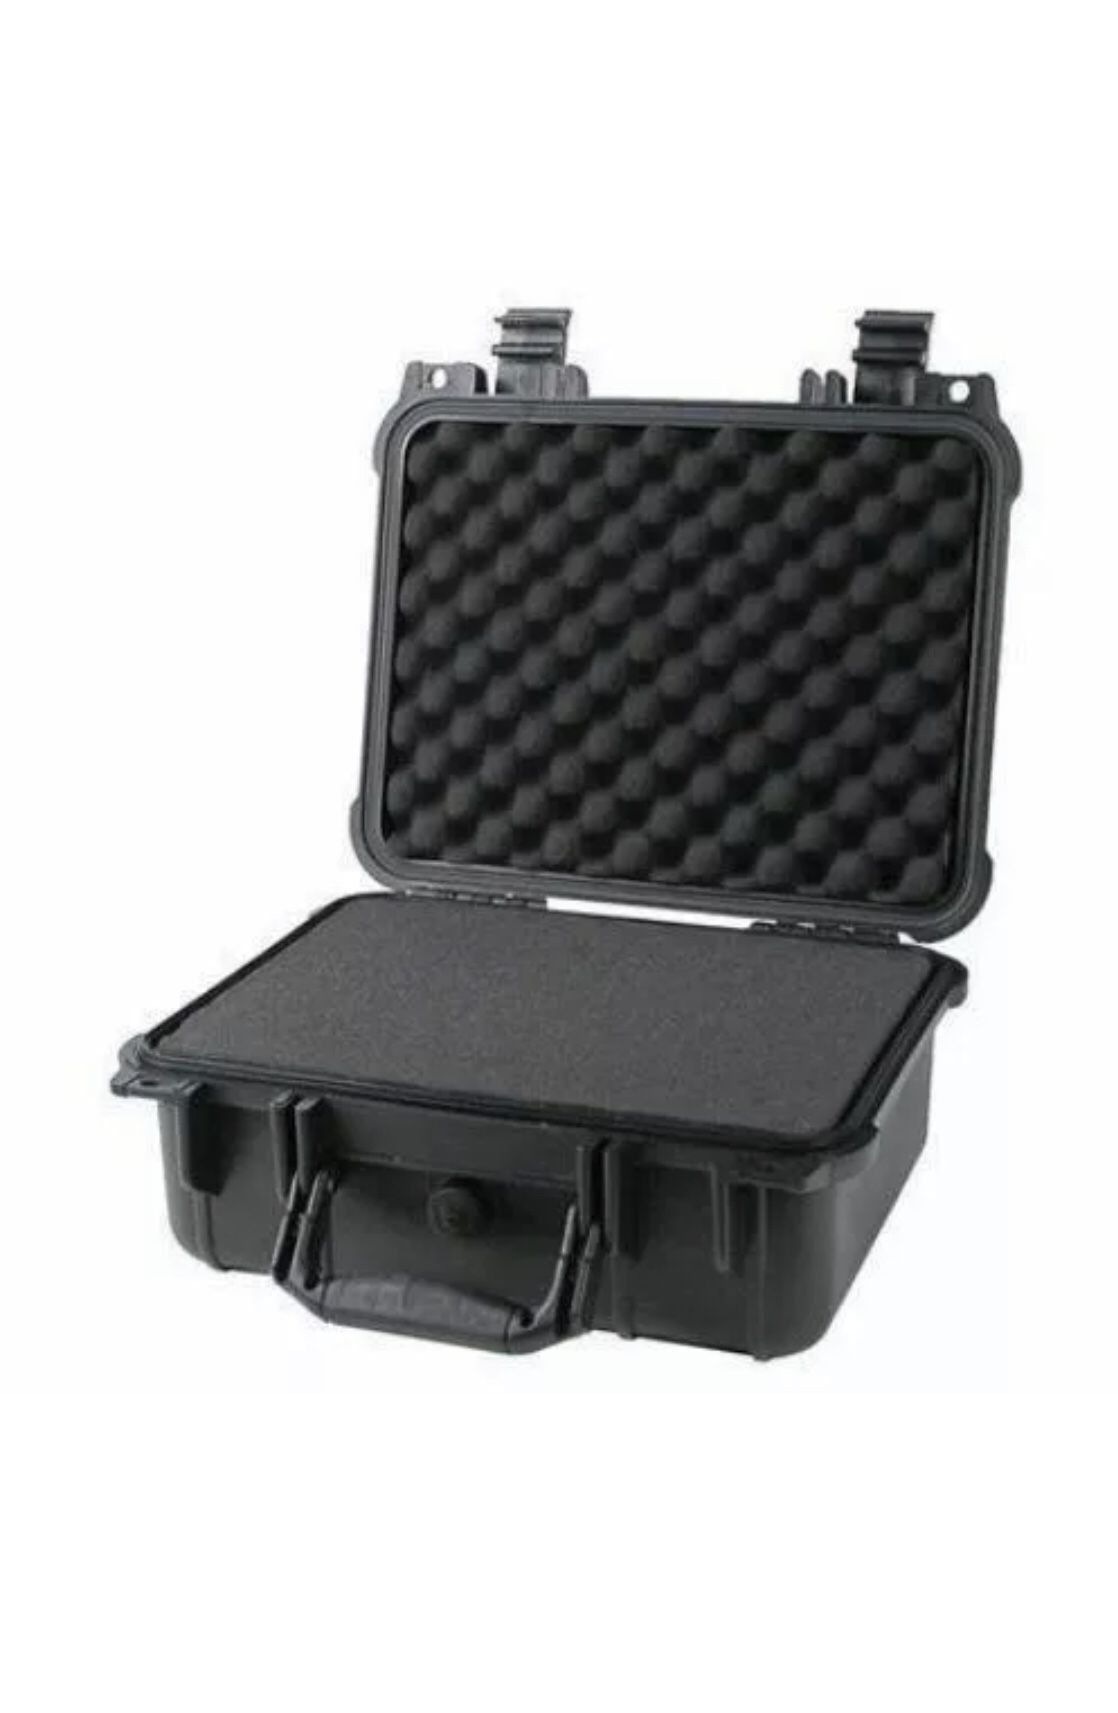 14" Weatherproof Hard Case Dry Box For DSLR HD Camera w/ Pelican 1400 Pluck Foam